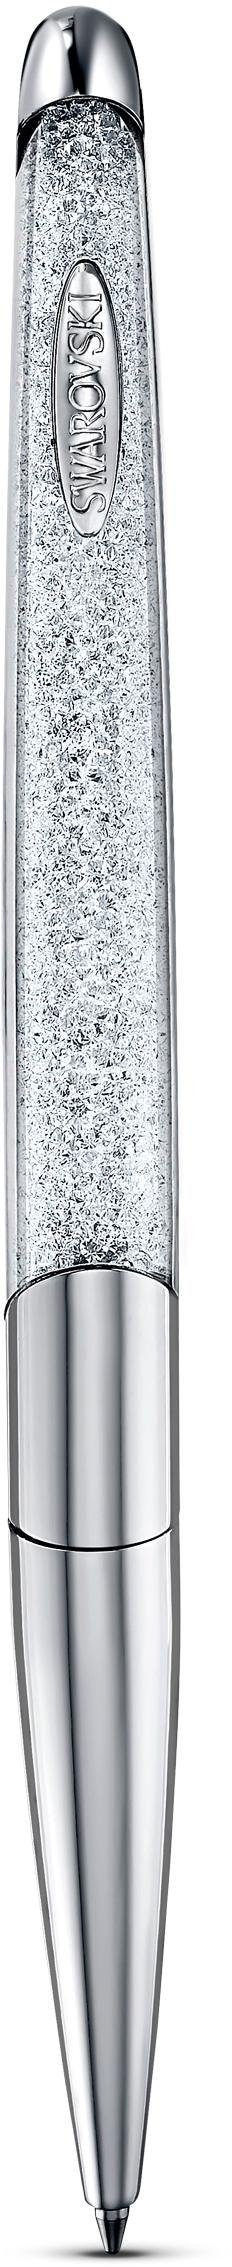 Swarovski Kugelschreiber »Crystalline Nova, weiß, verchromt, 5534324«, mit Swarovski® Kristallen